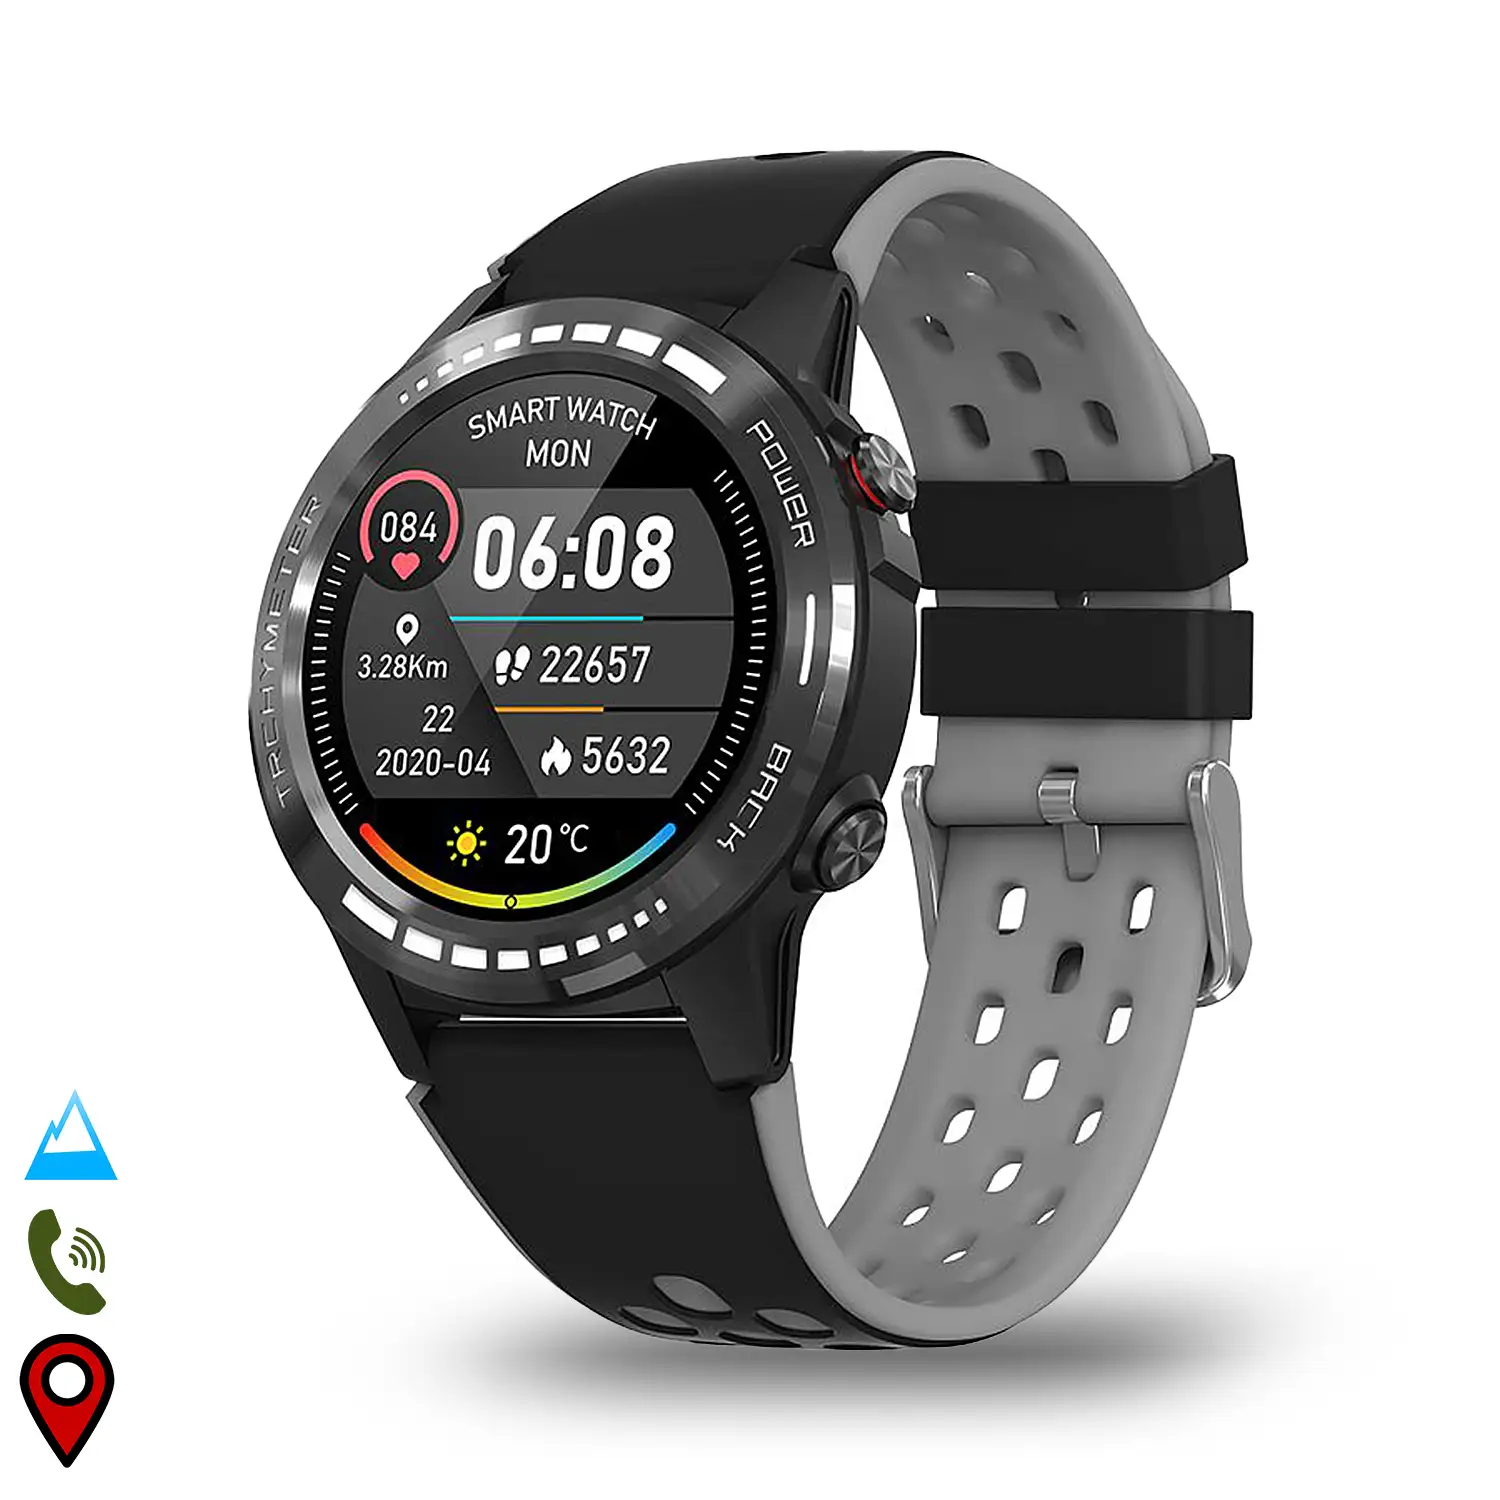 Smartwatch M7S con GPS, brújula, barómetro y altímetro. Slot para tarjeta  SIM. Funciones deportivas y de